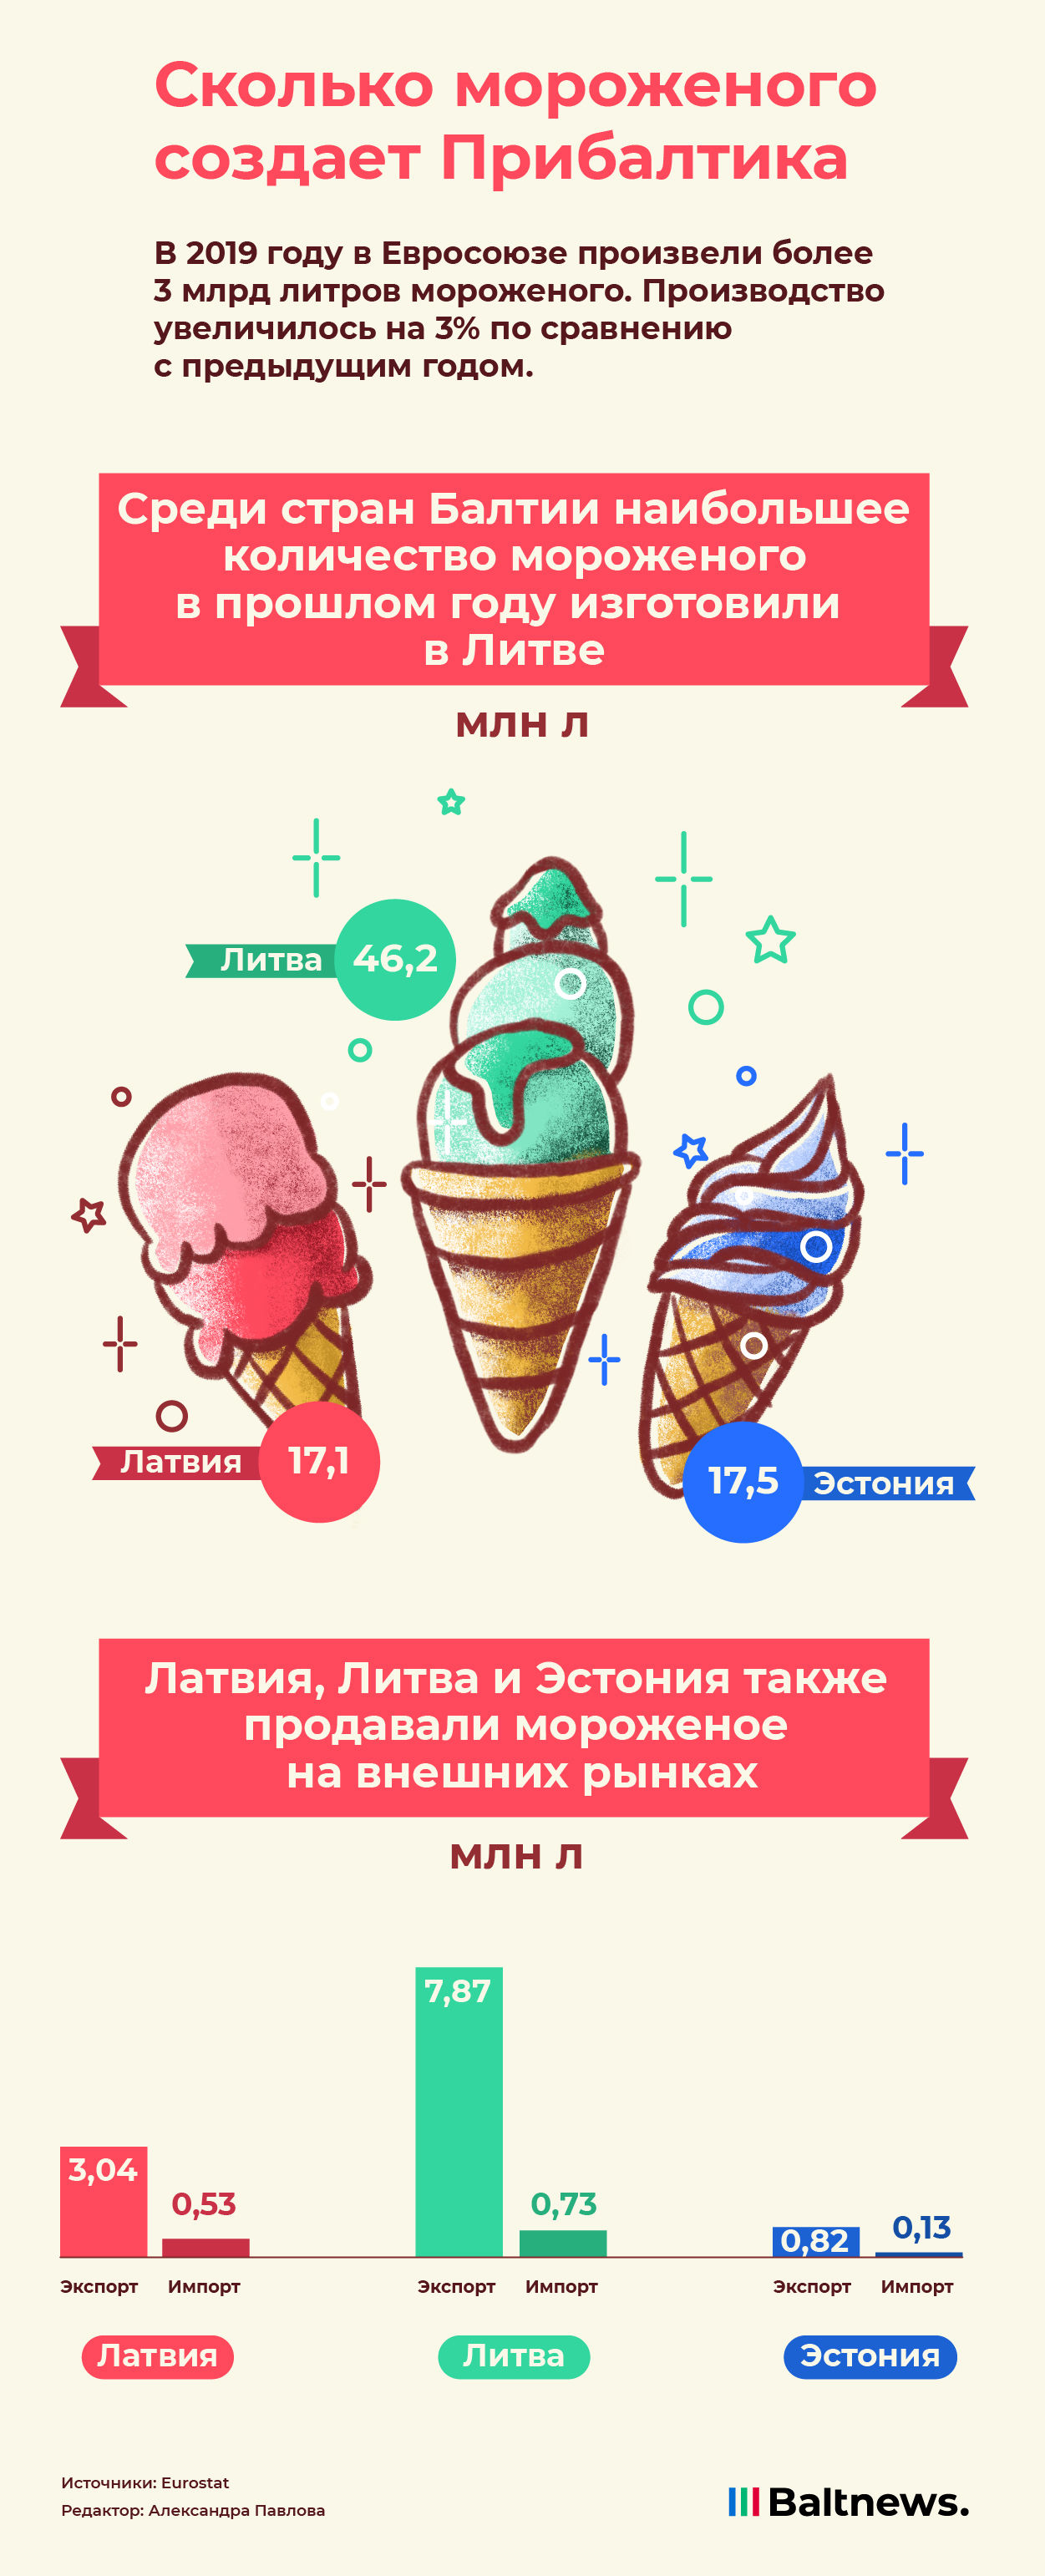 Сколько мороженого создает Прибалтика